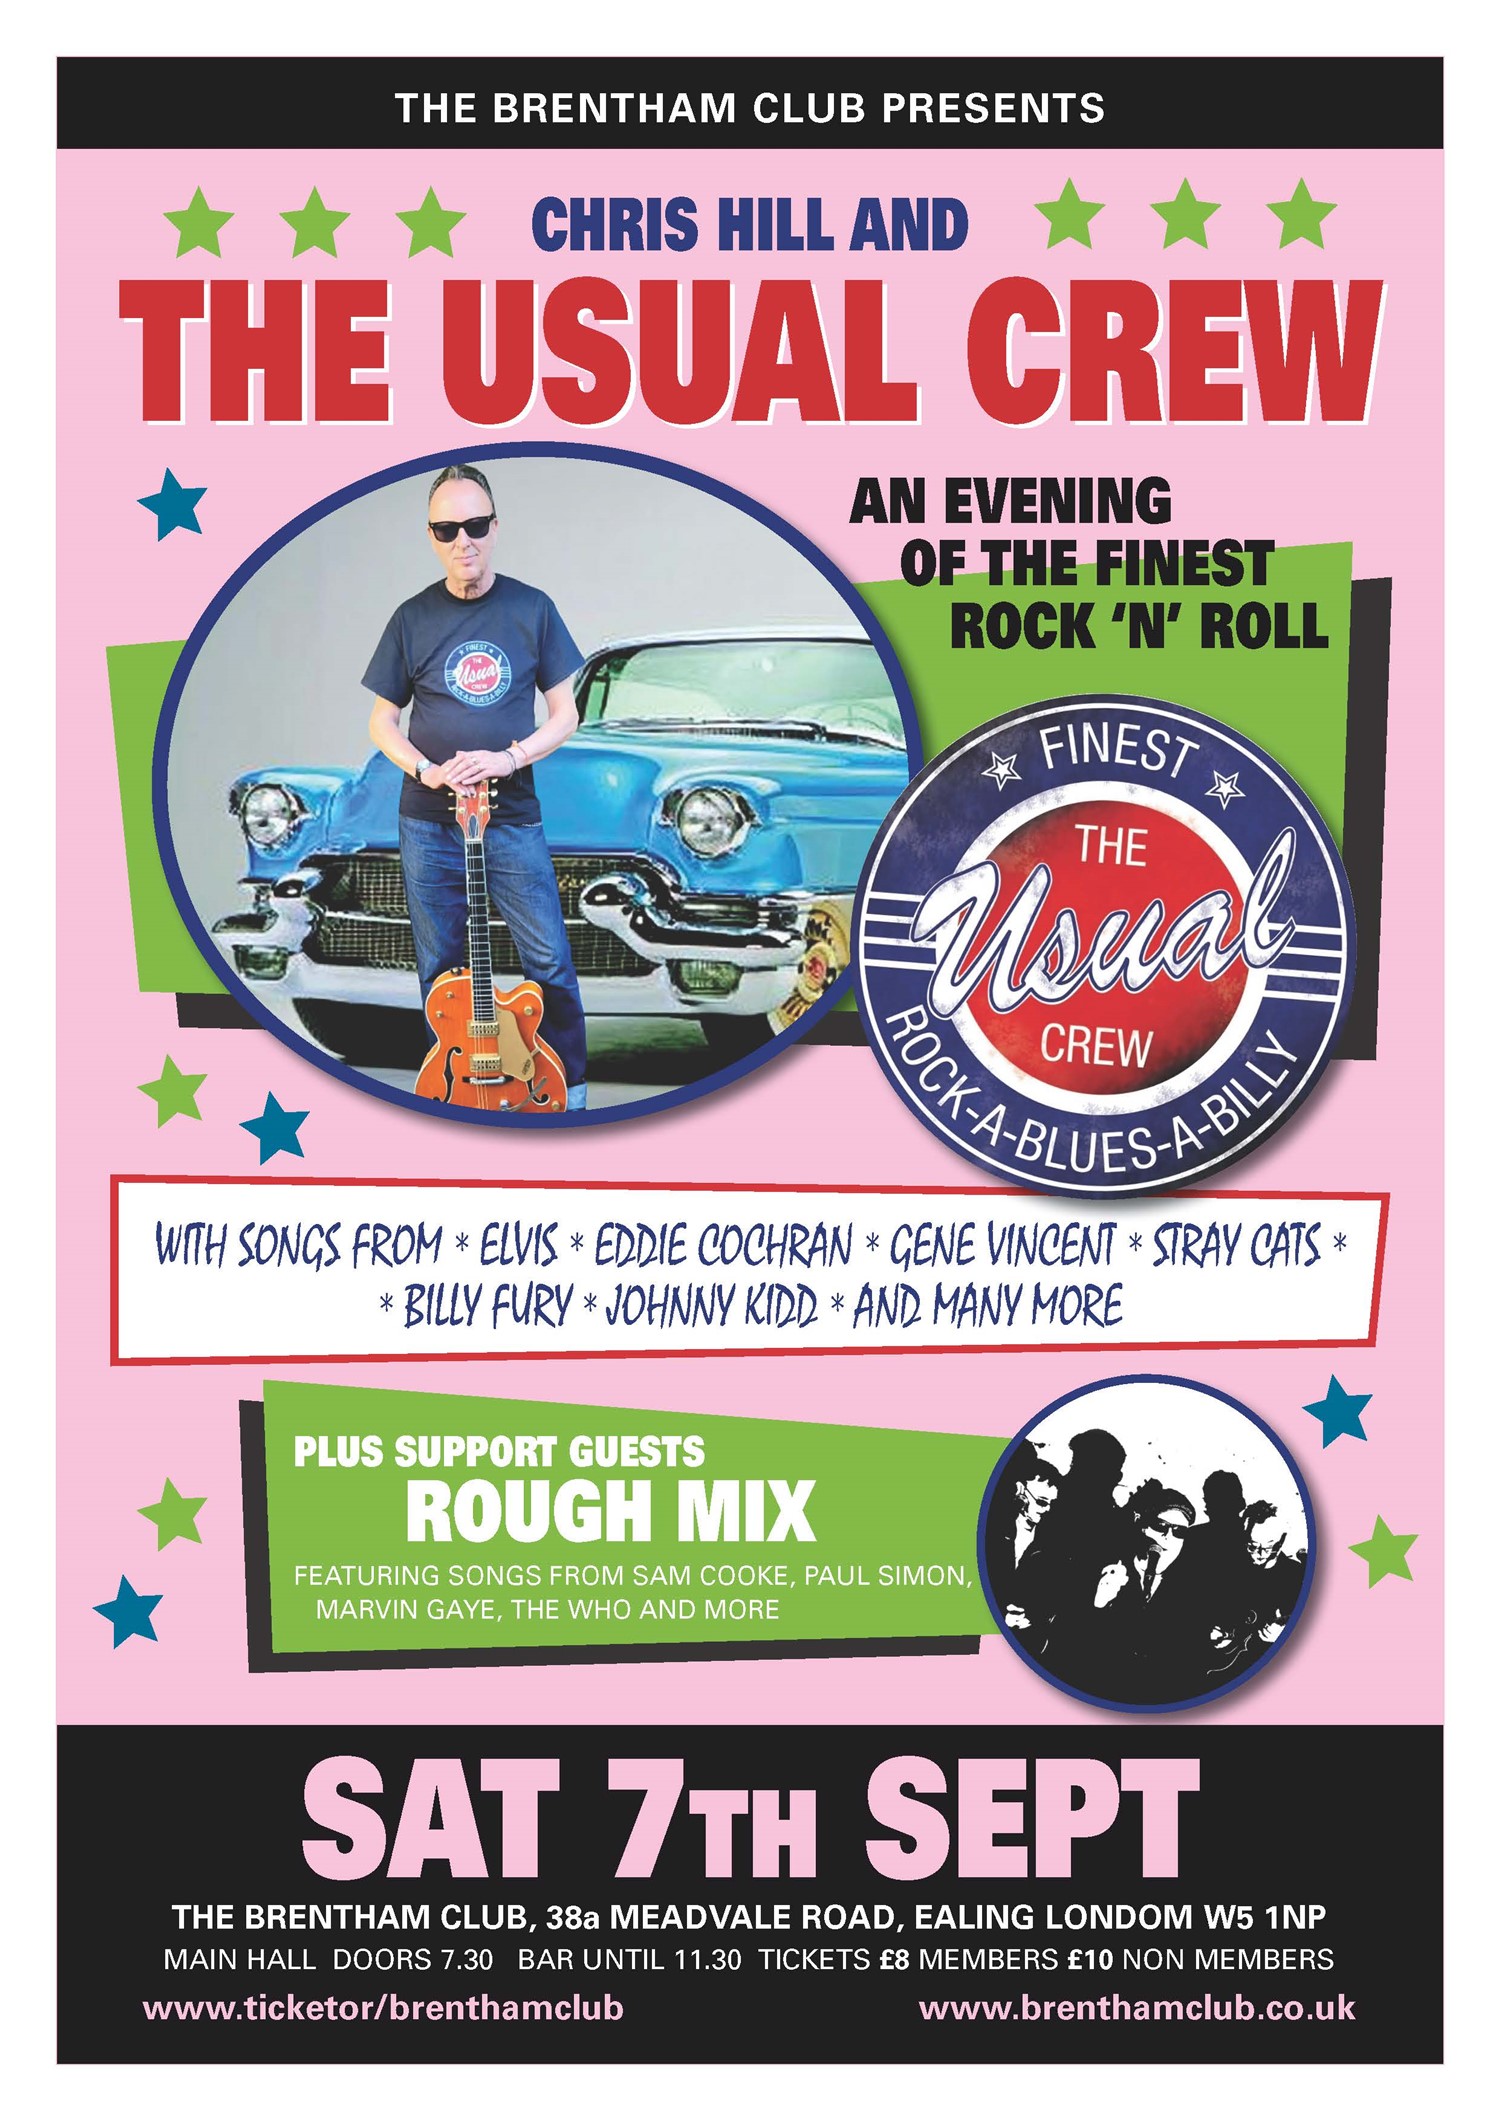 Chris Hill & The Usual Crew  on sept. 07, 20:00@The Brentham Club - Achetez des billets et obtenez des informations surBrenthamclub.co.uk 